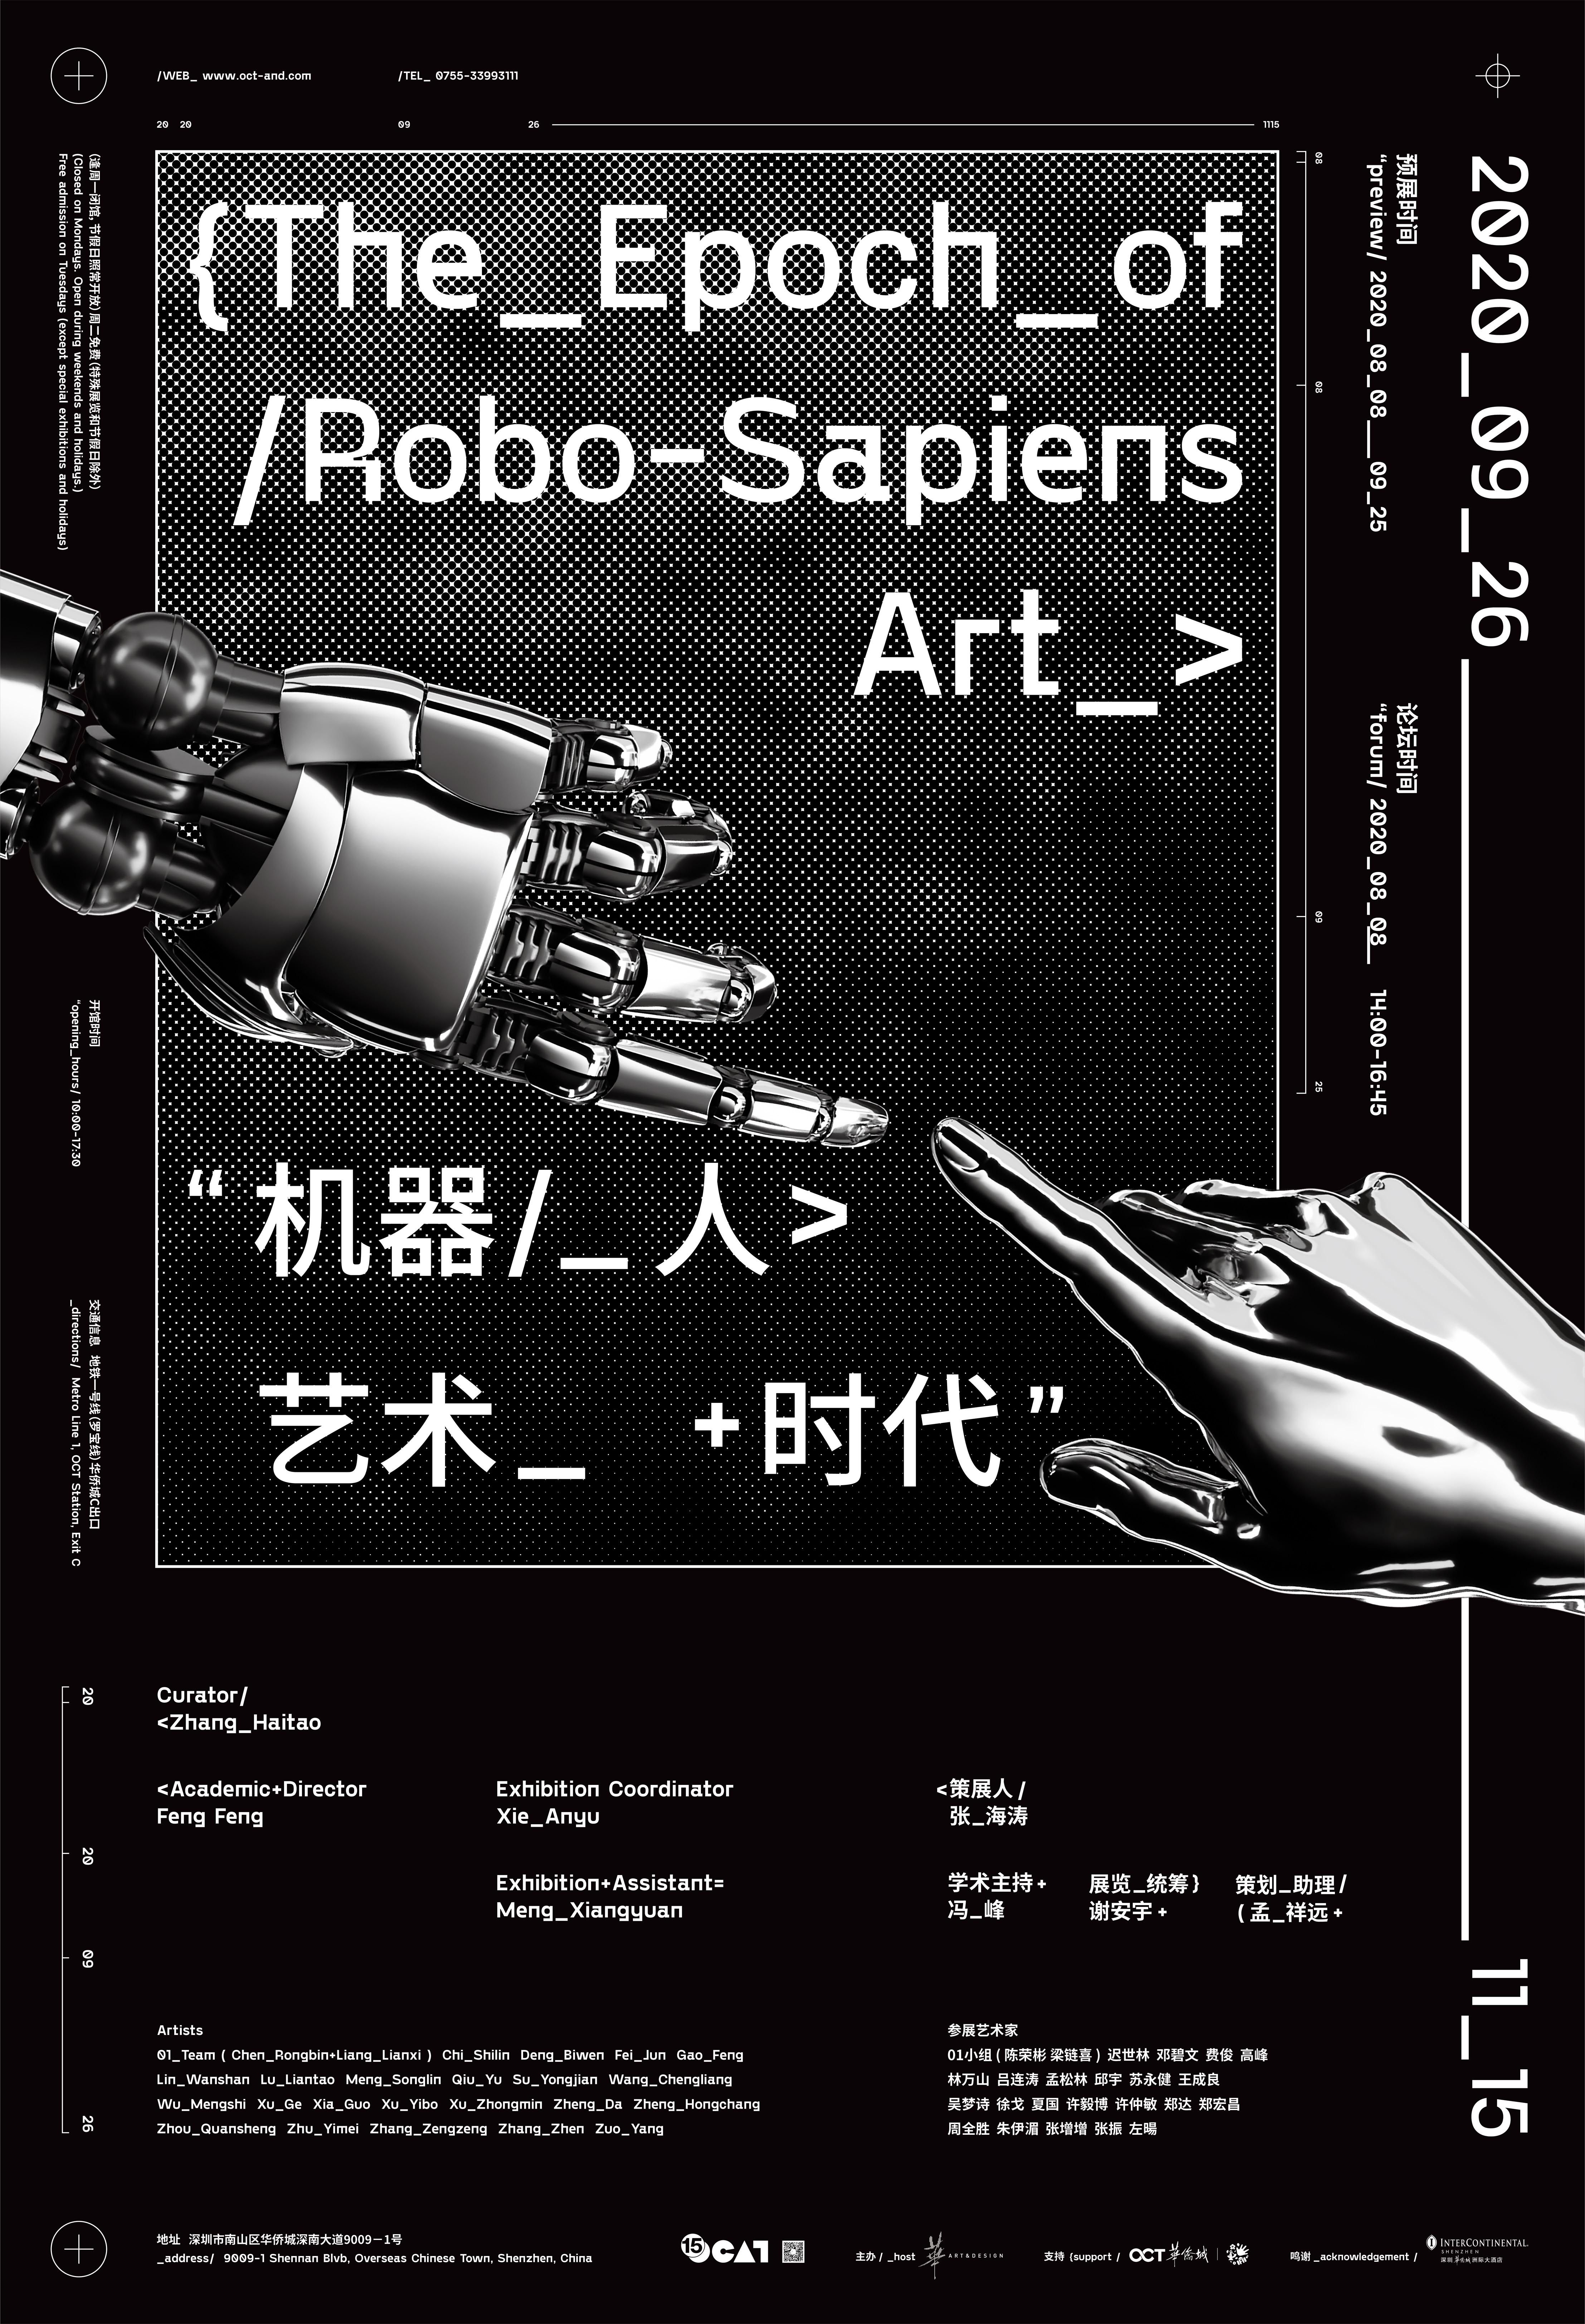 机器·人·艺术·时代 THE EPOCH OF ROBO-SAPIENS ART